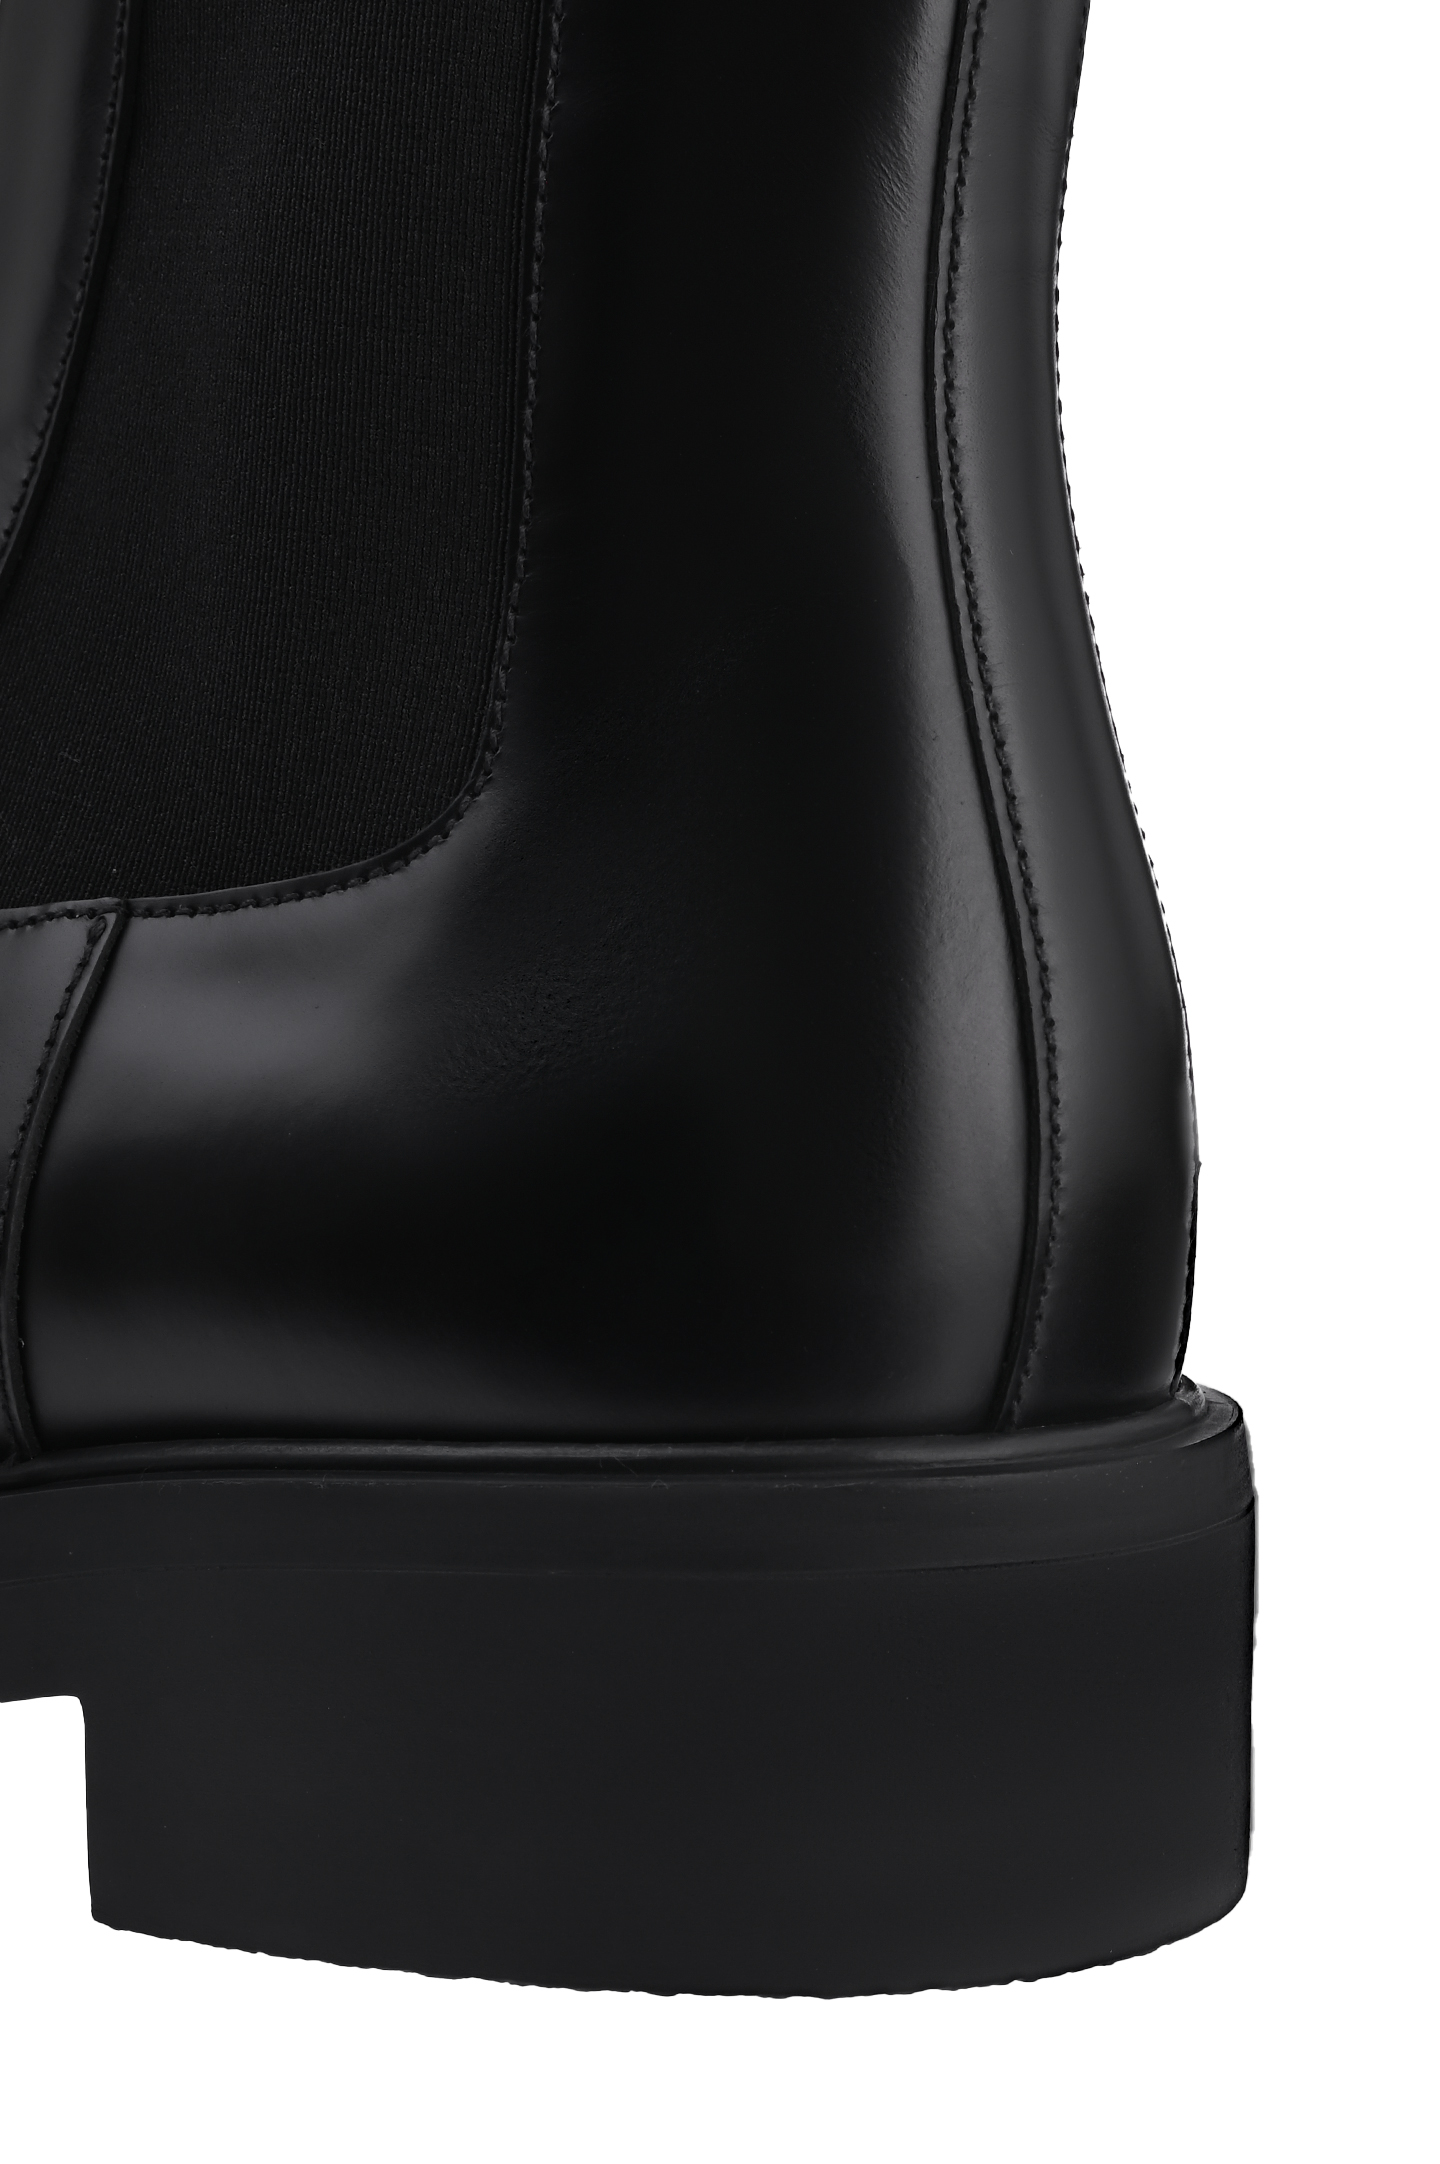 Ботинки PRADA 2UG006B4LF002, цвет: Черный, Мужской